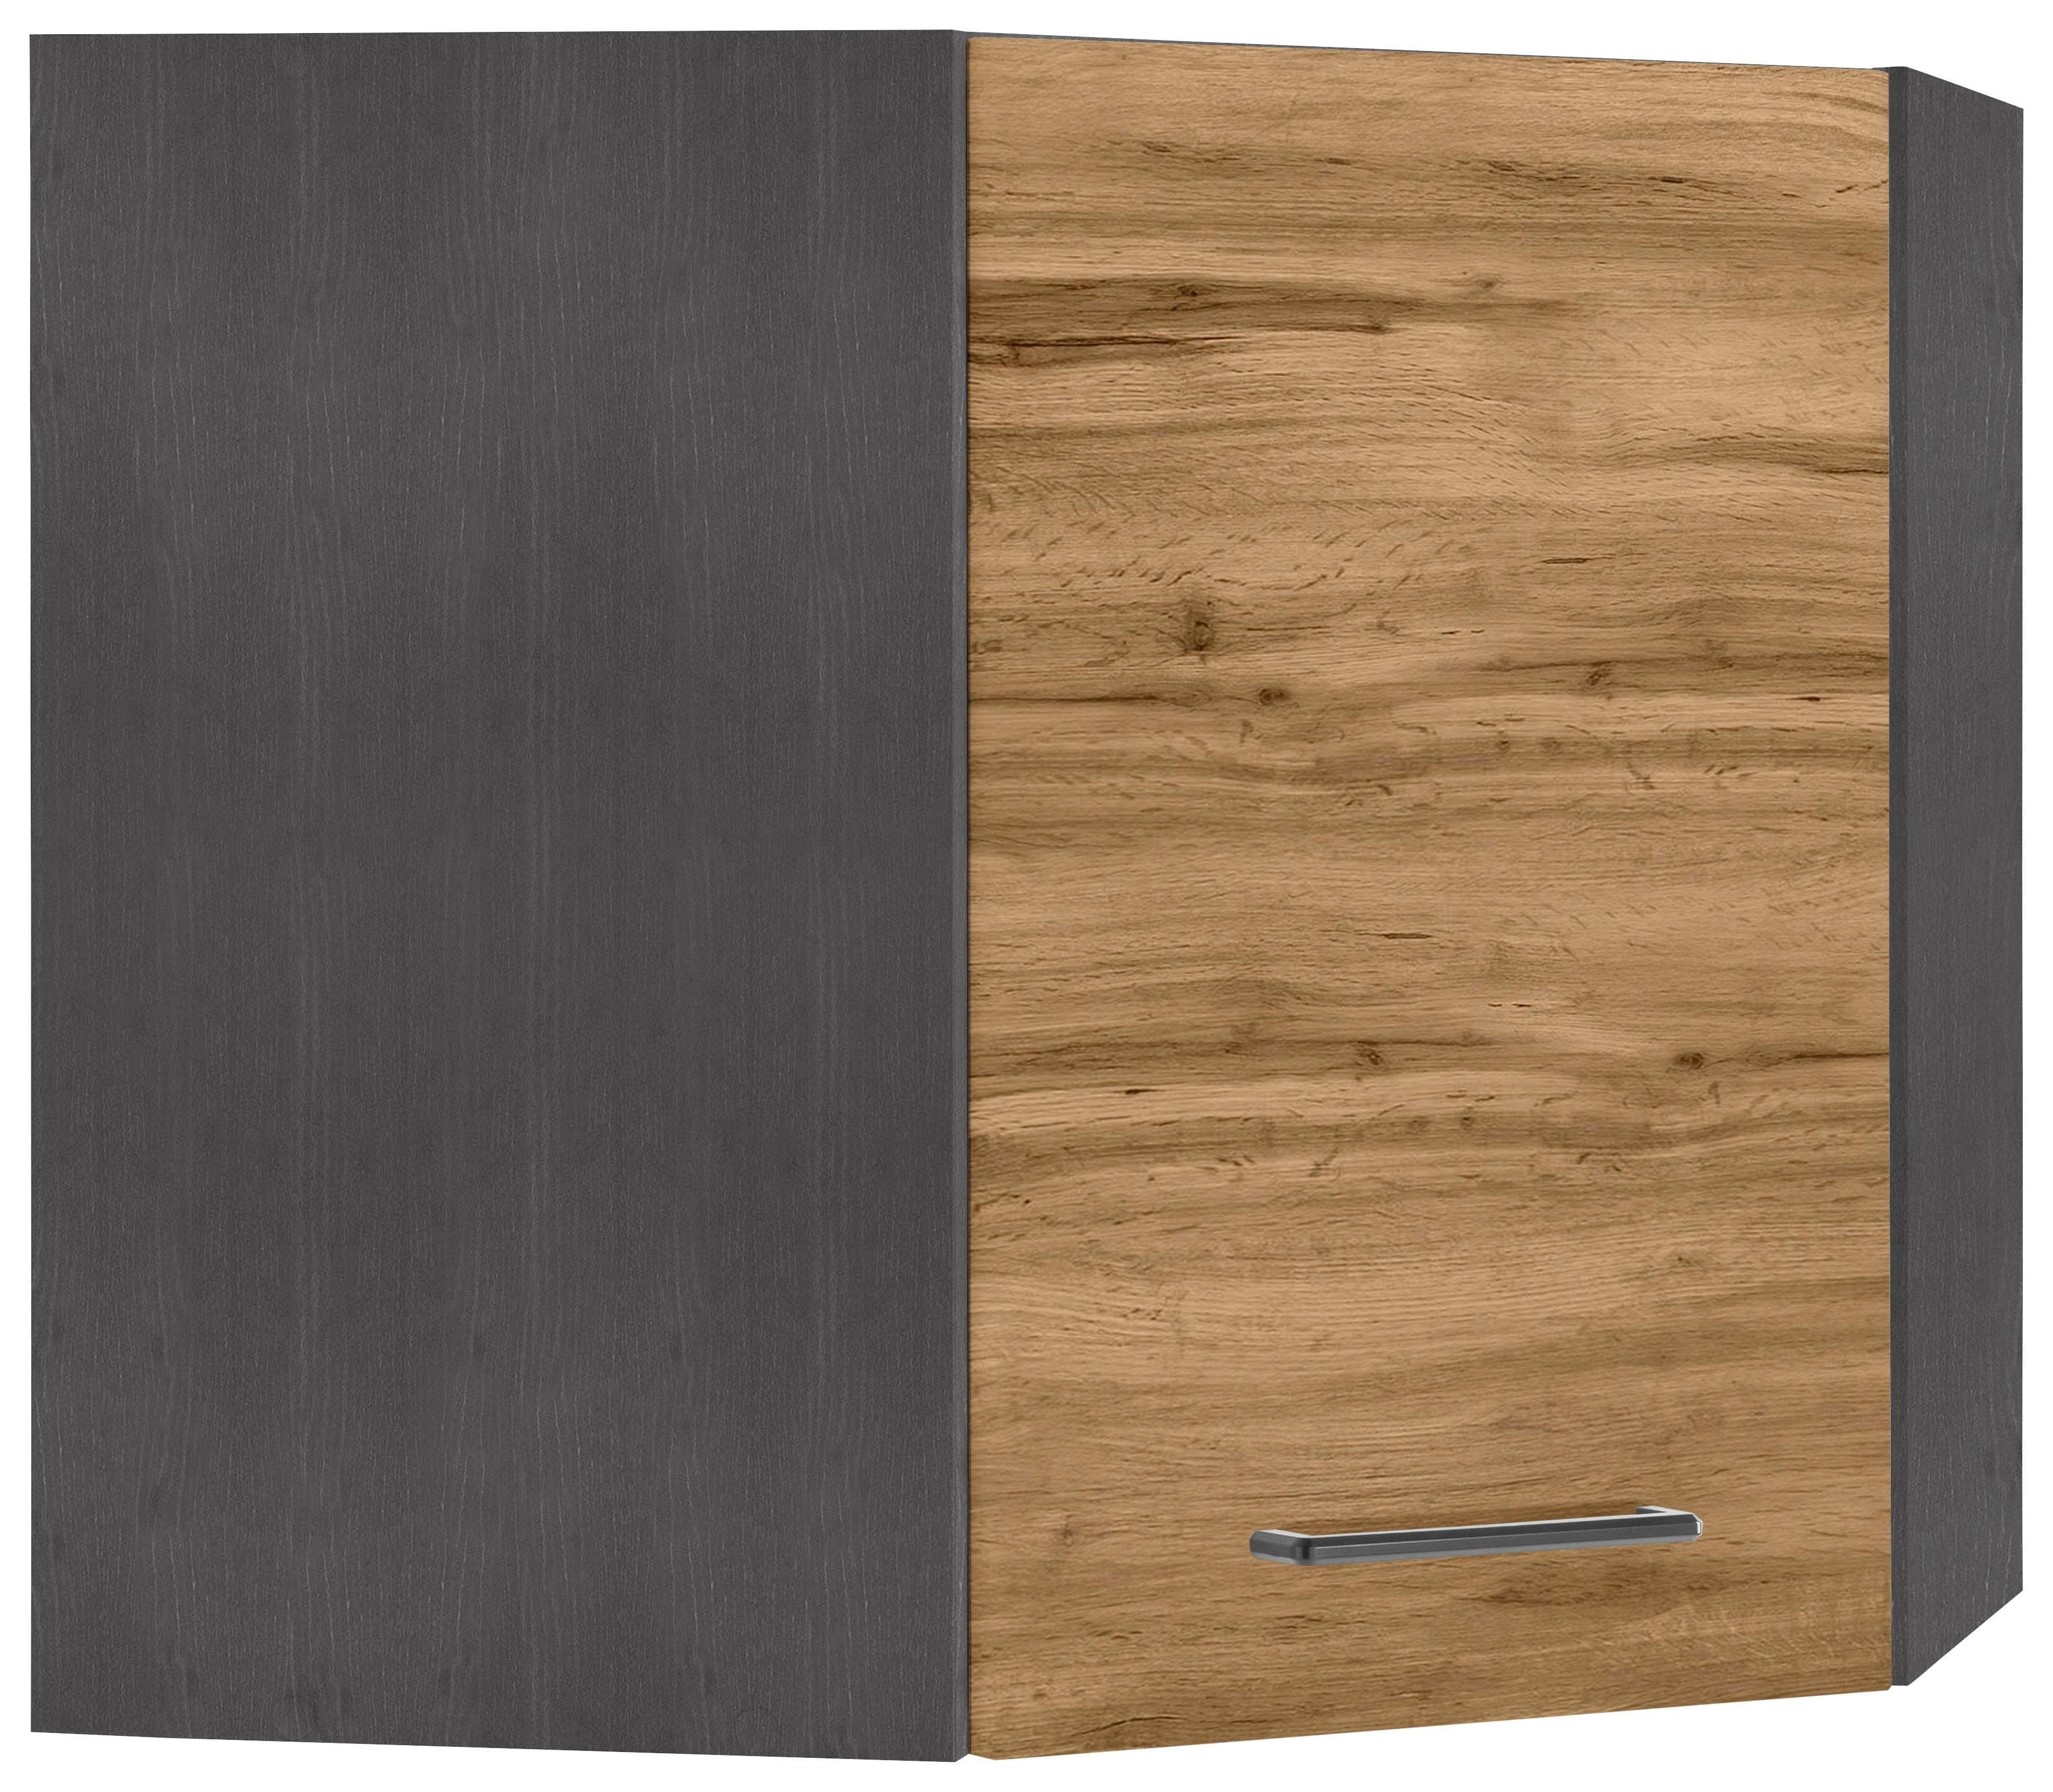 HELD MÖBEL Eckhängeschrank Tulsa 60 cm breit, 1 Tür, schwarzer Metallgriff, hochwertige MDF Front wotaneiche | grafit